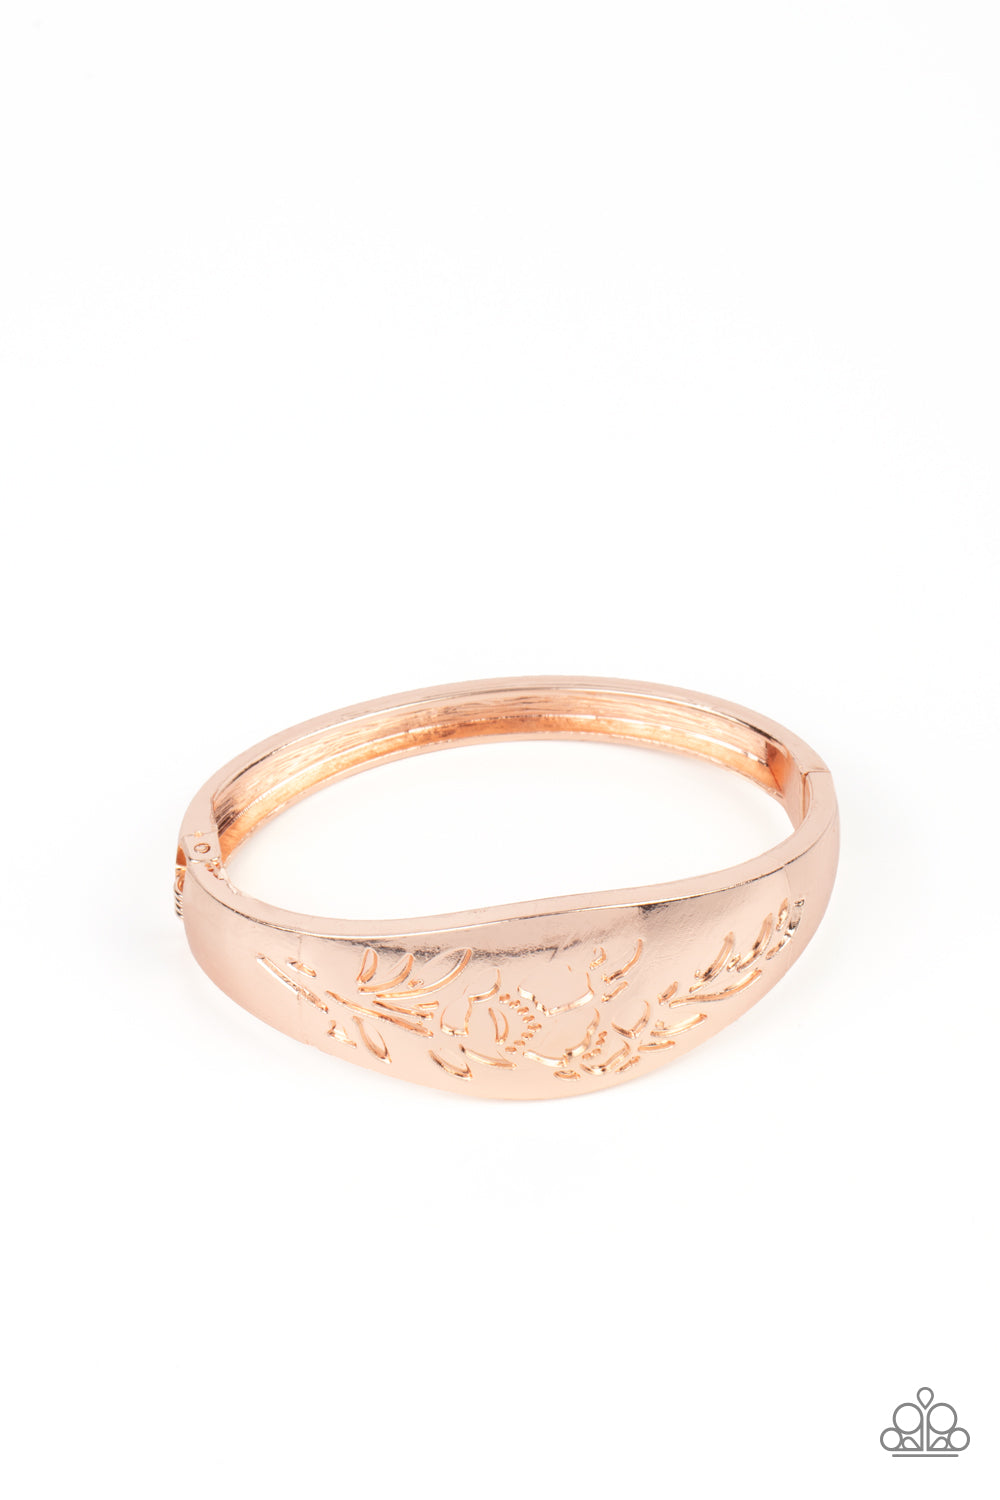 Fond of Florals - Paparazzi - Rose Gold Stamped Flower Hinge Bangle Bracelet